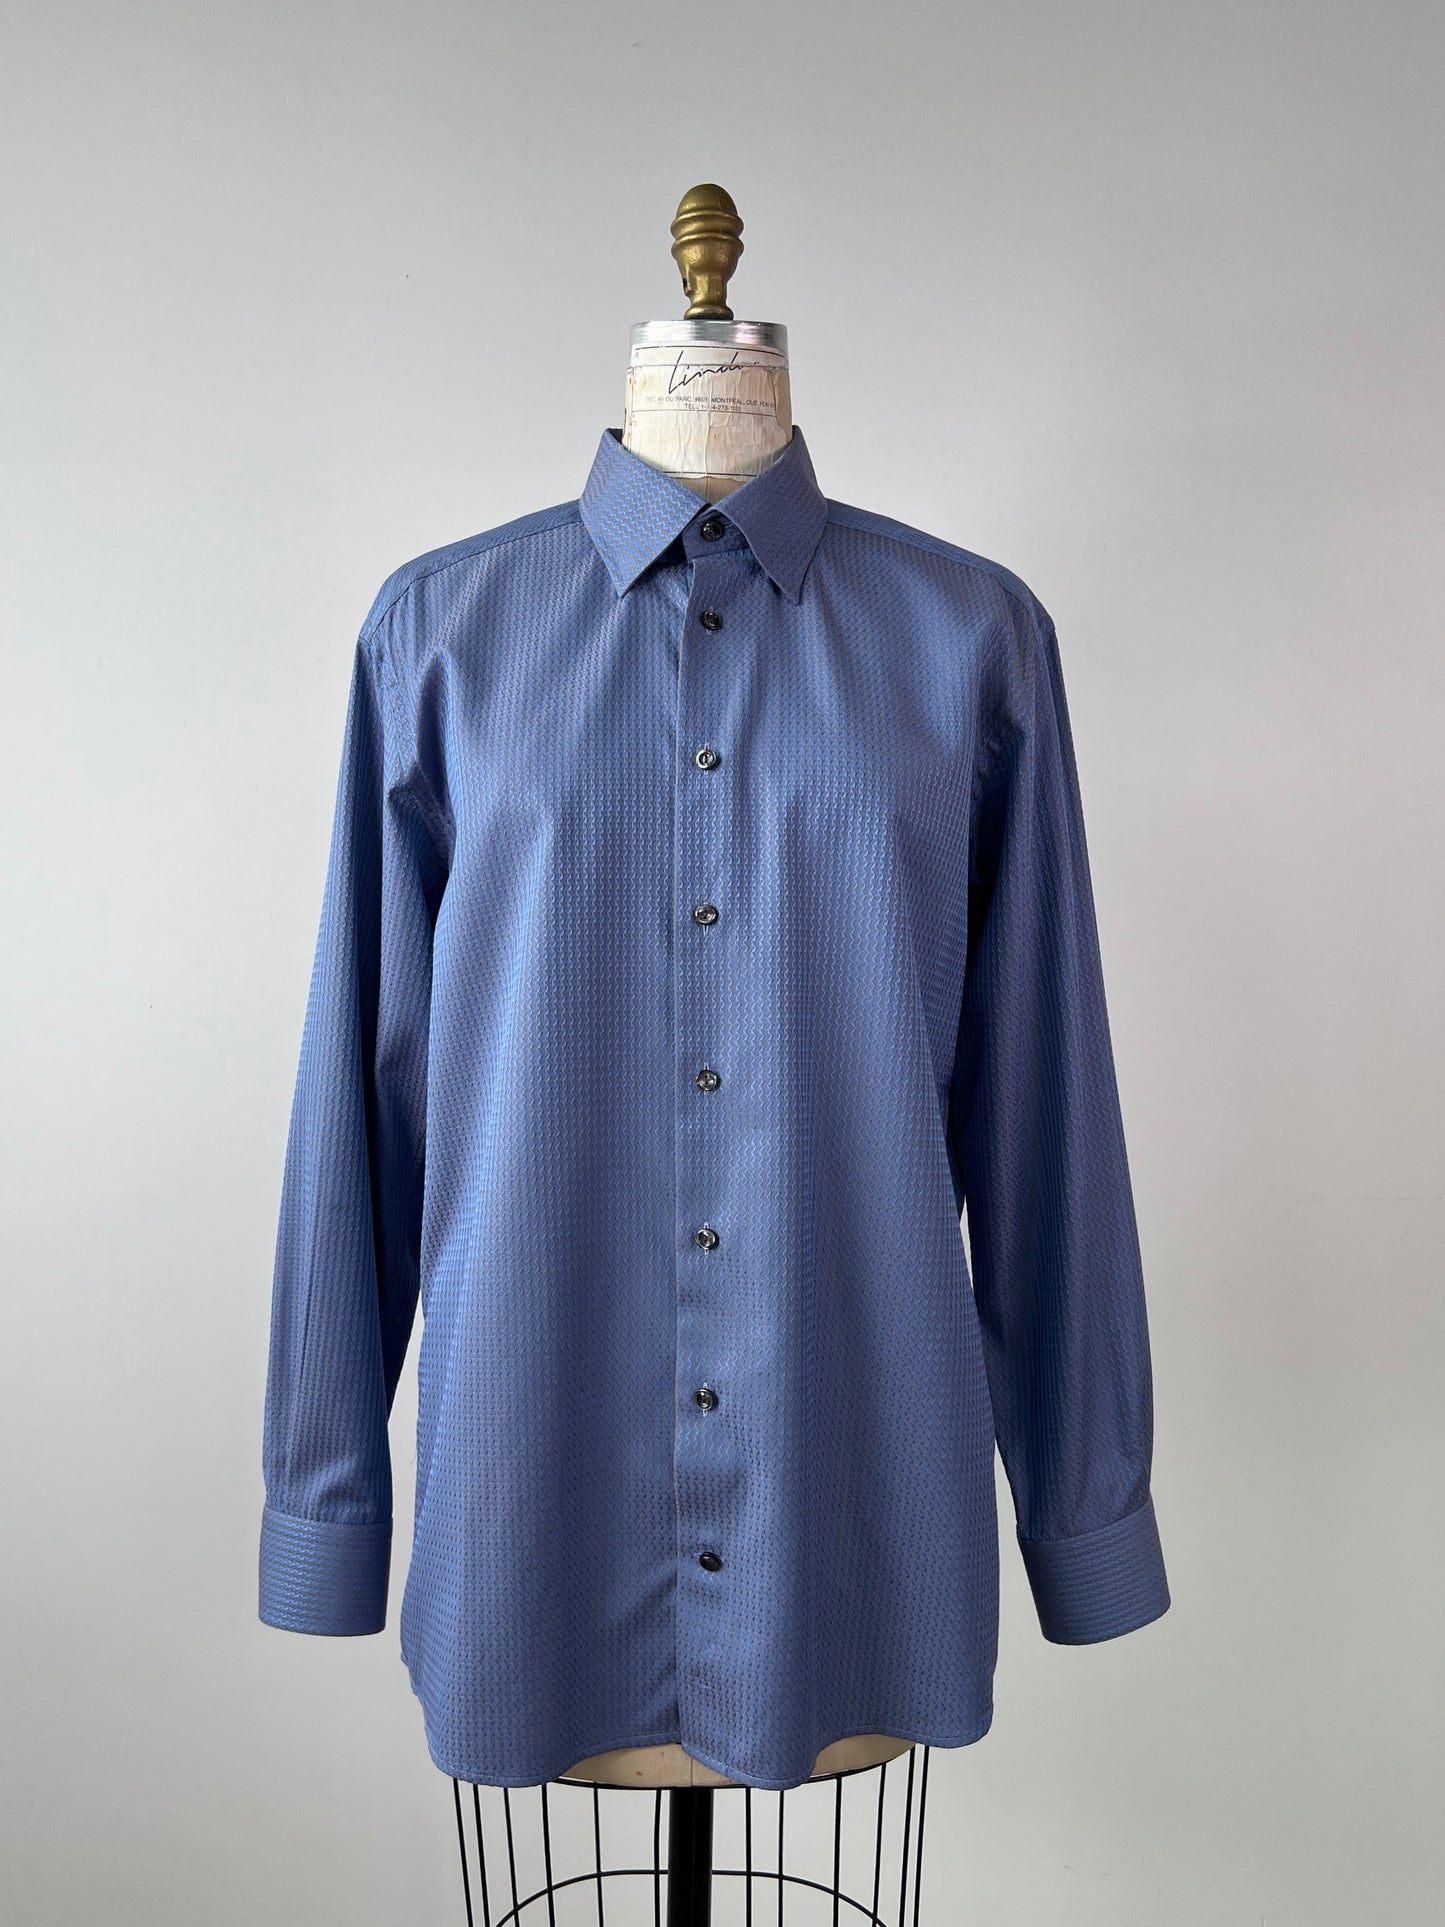 Chemise satinée bleue à jacquard sable (XL)